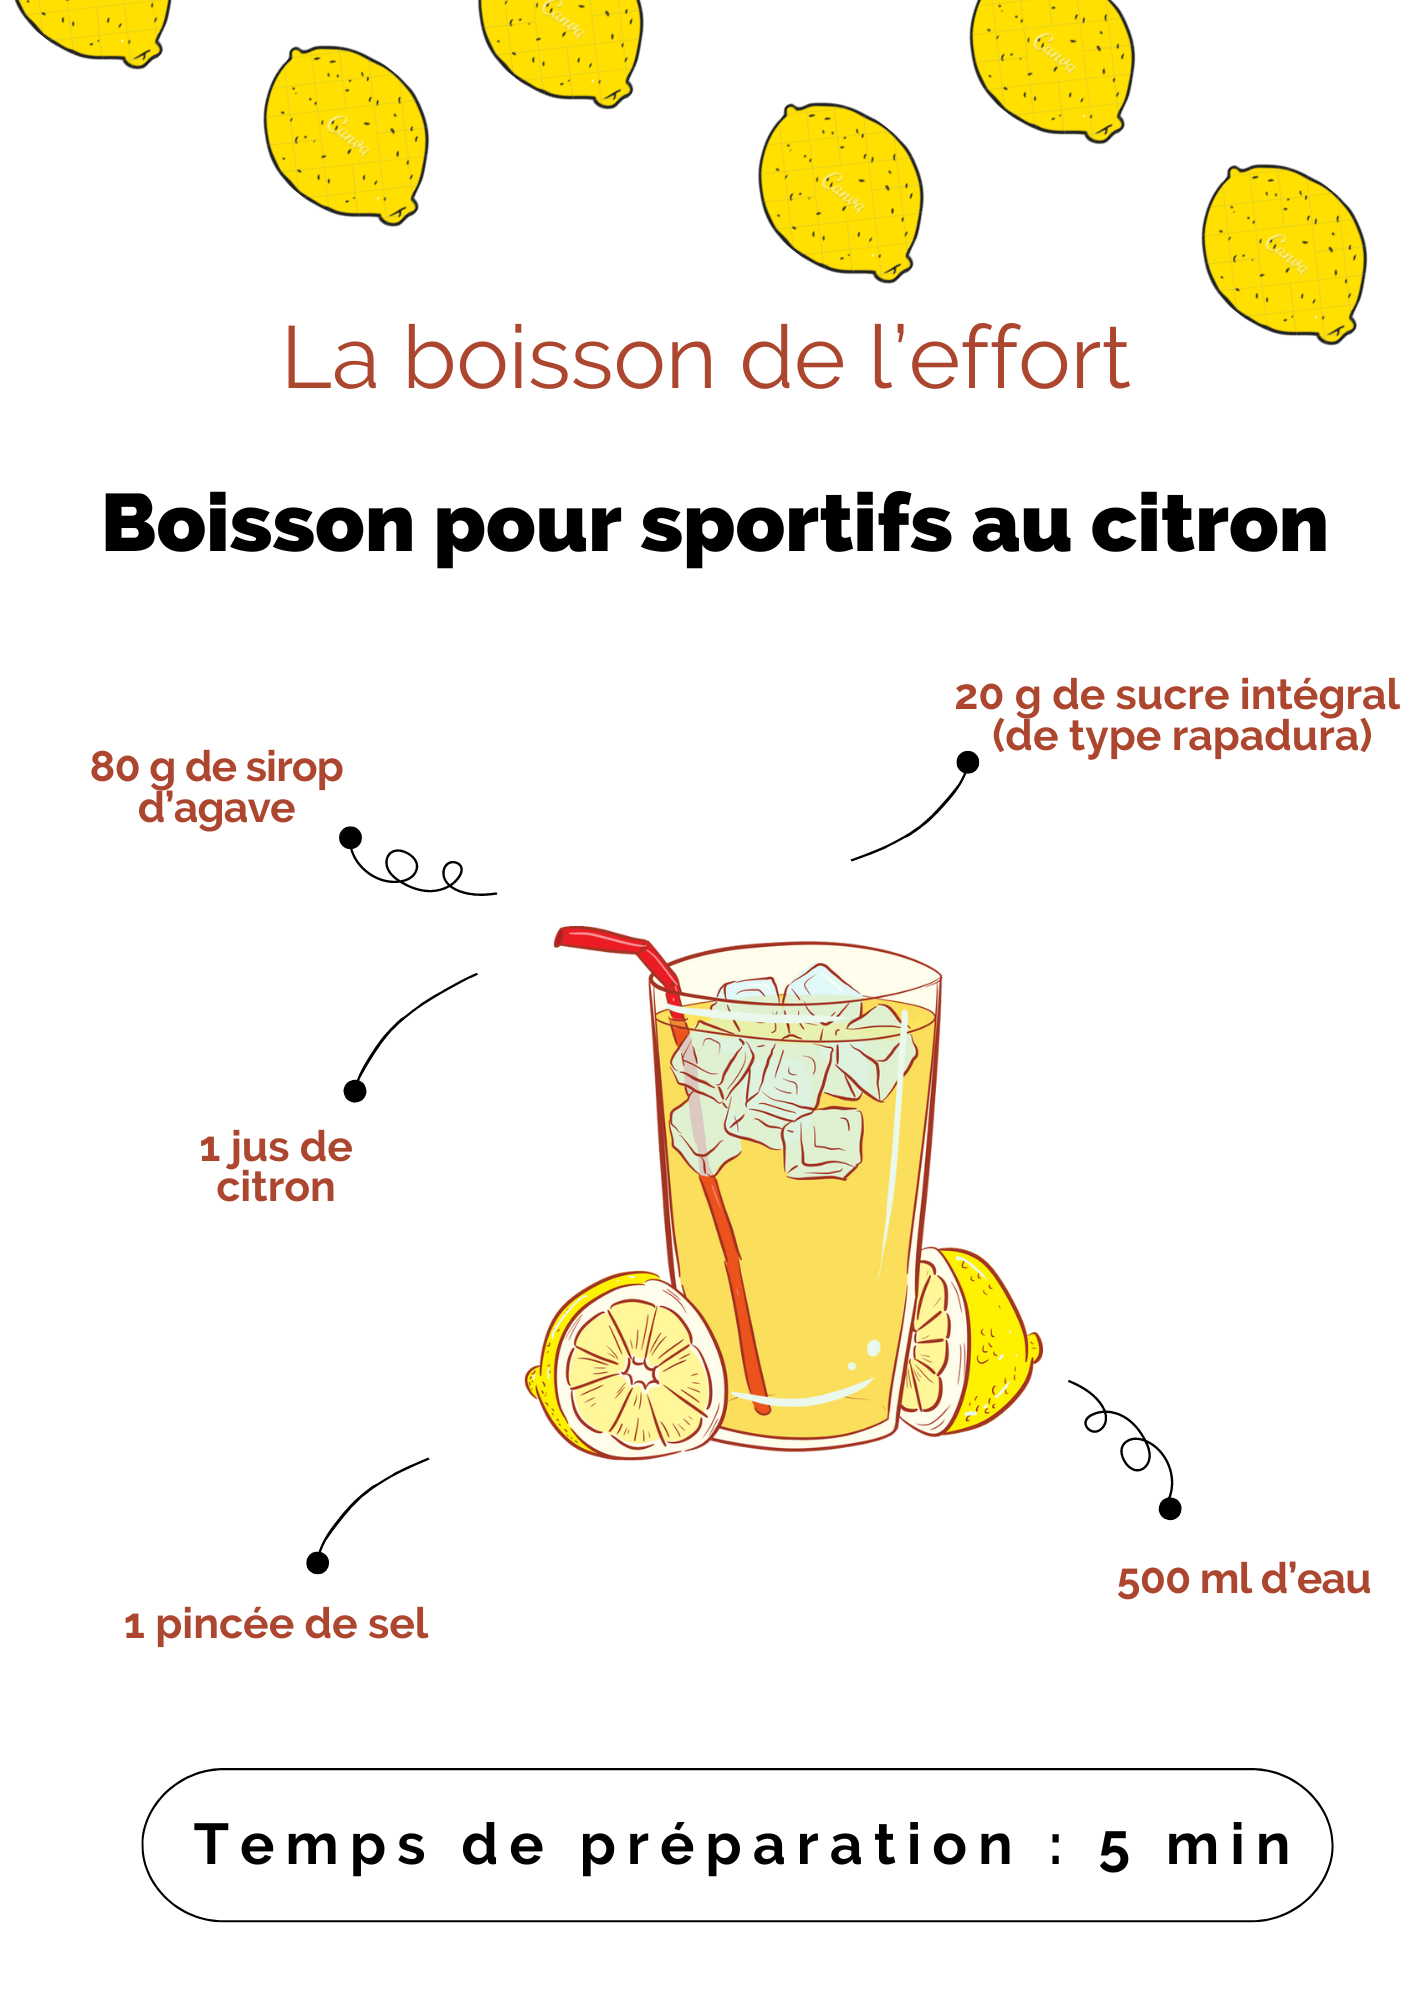 Boisson deffort pour sportifs au citron